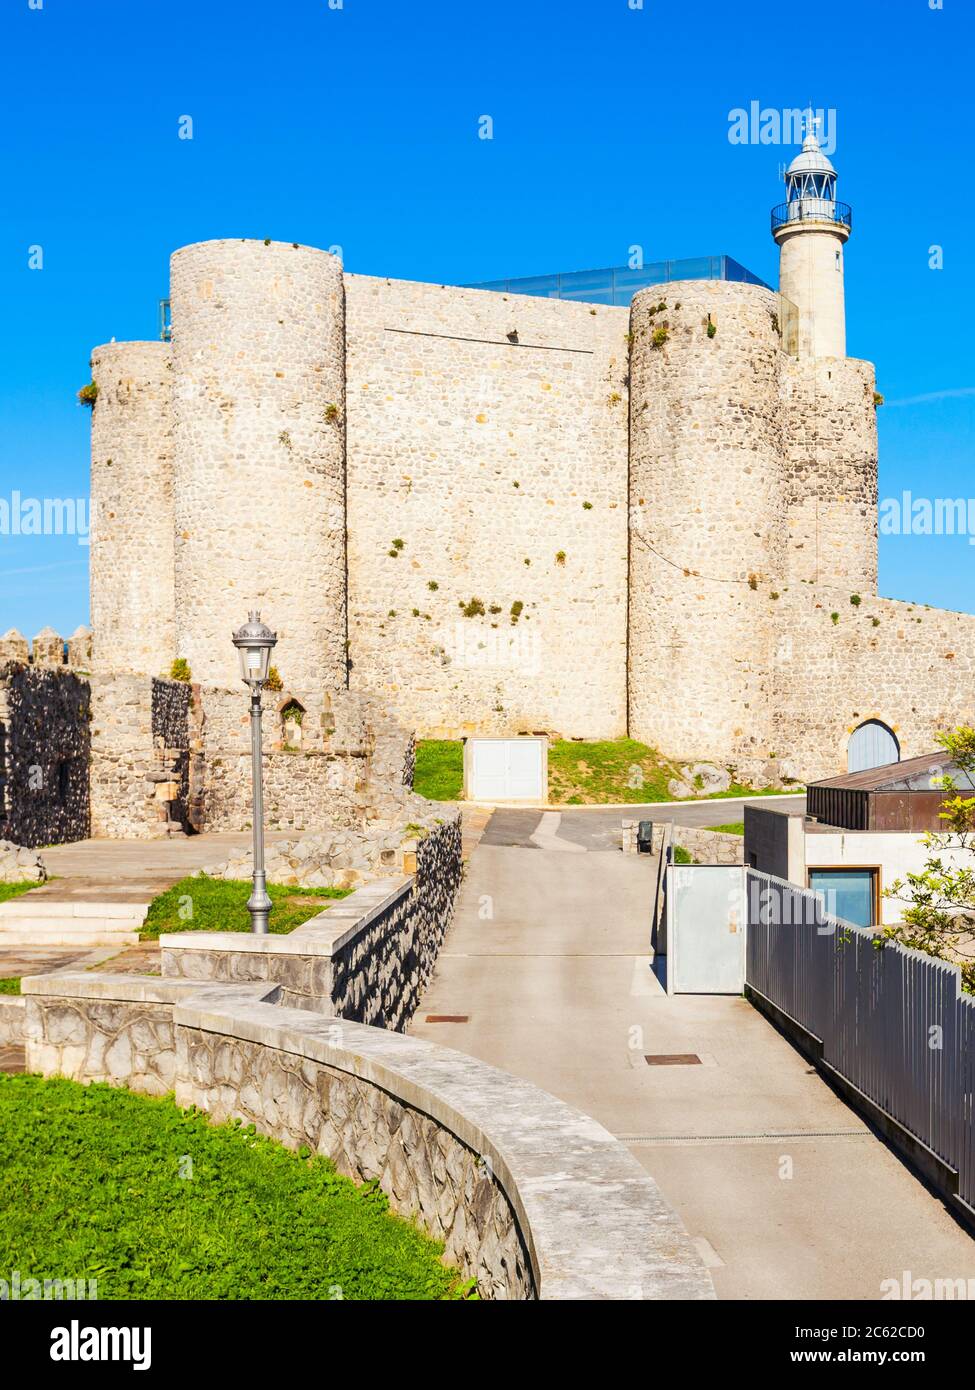 Château de Santa Ana ou Castillo de Santa Ana et phare de Castro Urdiales, petite ville dans la région de Cantabrie, au nord de l'Espagne Banque D'Images